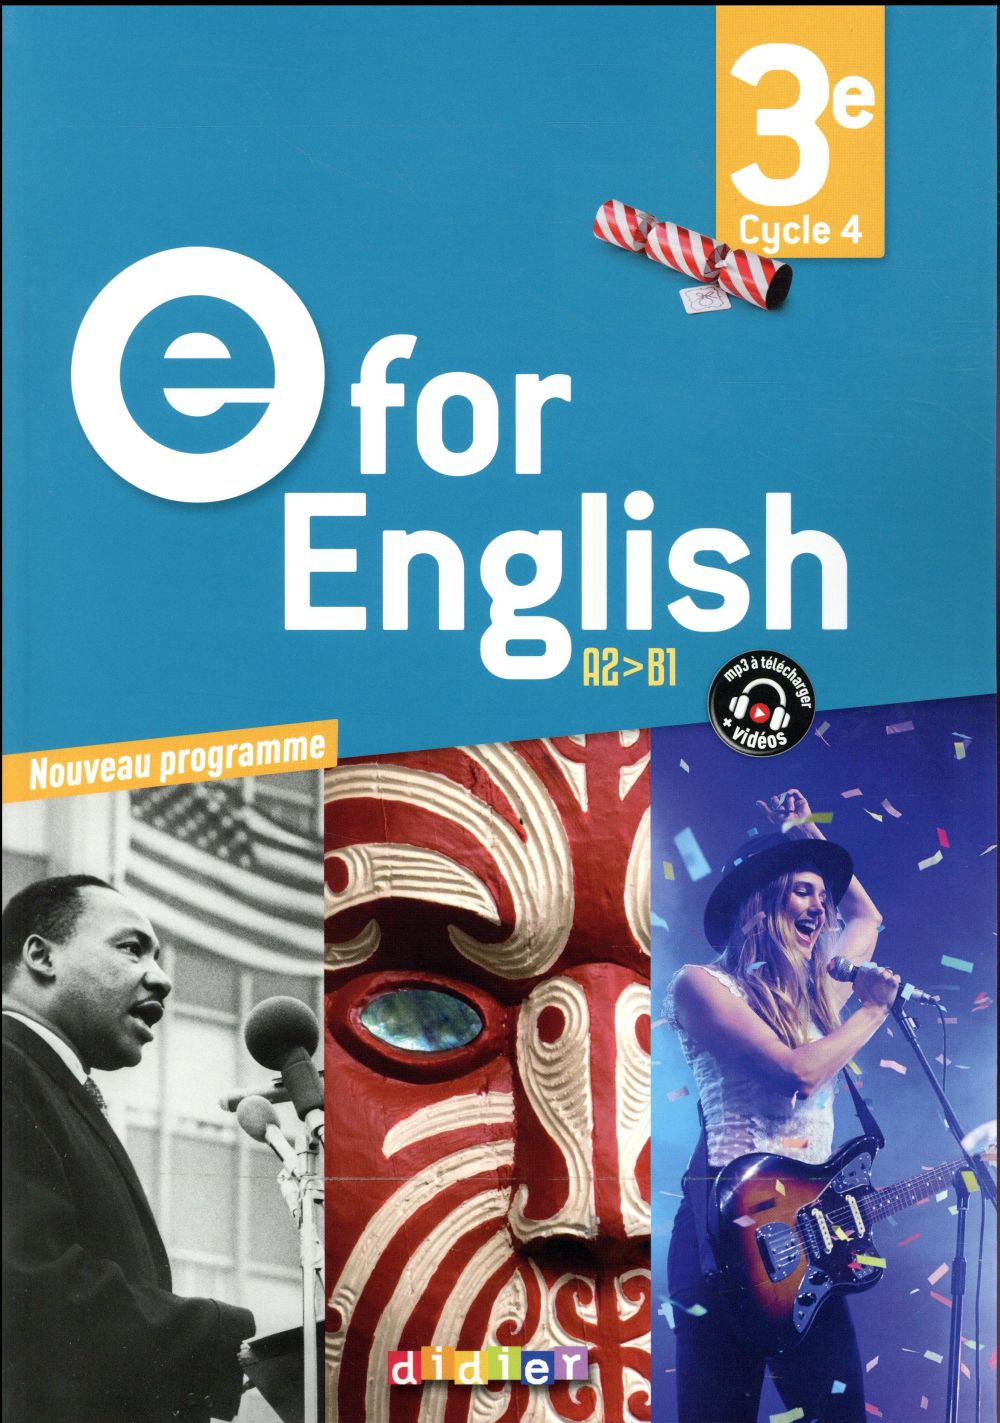 E FOR ENGLISH 3E (ED. 2017) - LIVRE